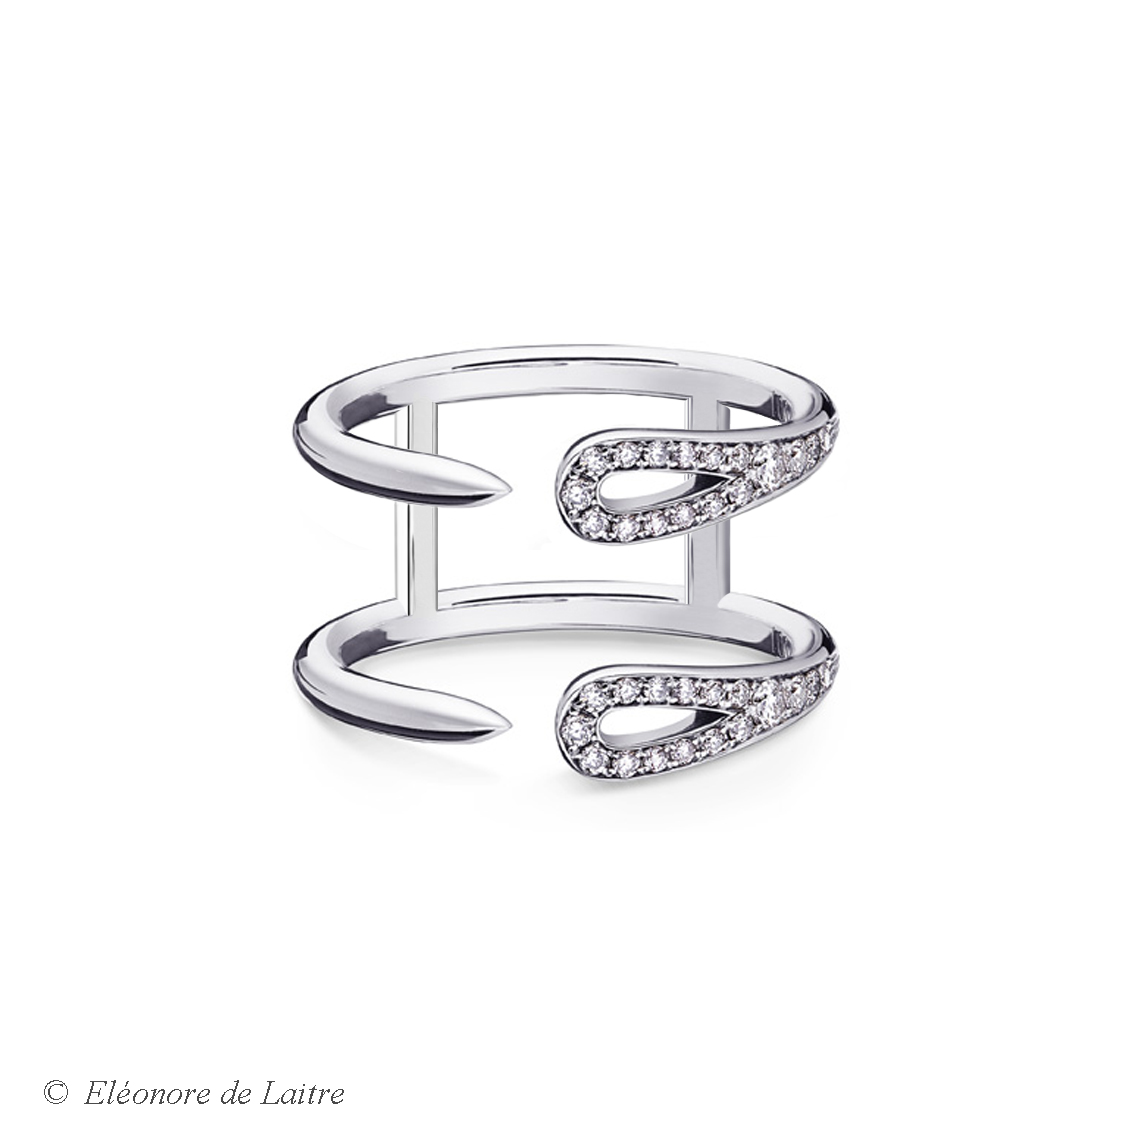 Eléonore de Laitre - Bague Double Aiguille - diamants, or gris - Collection Couture